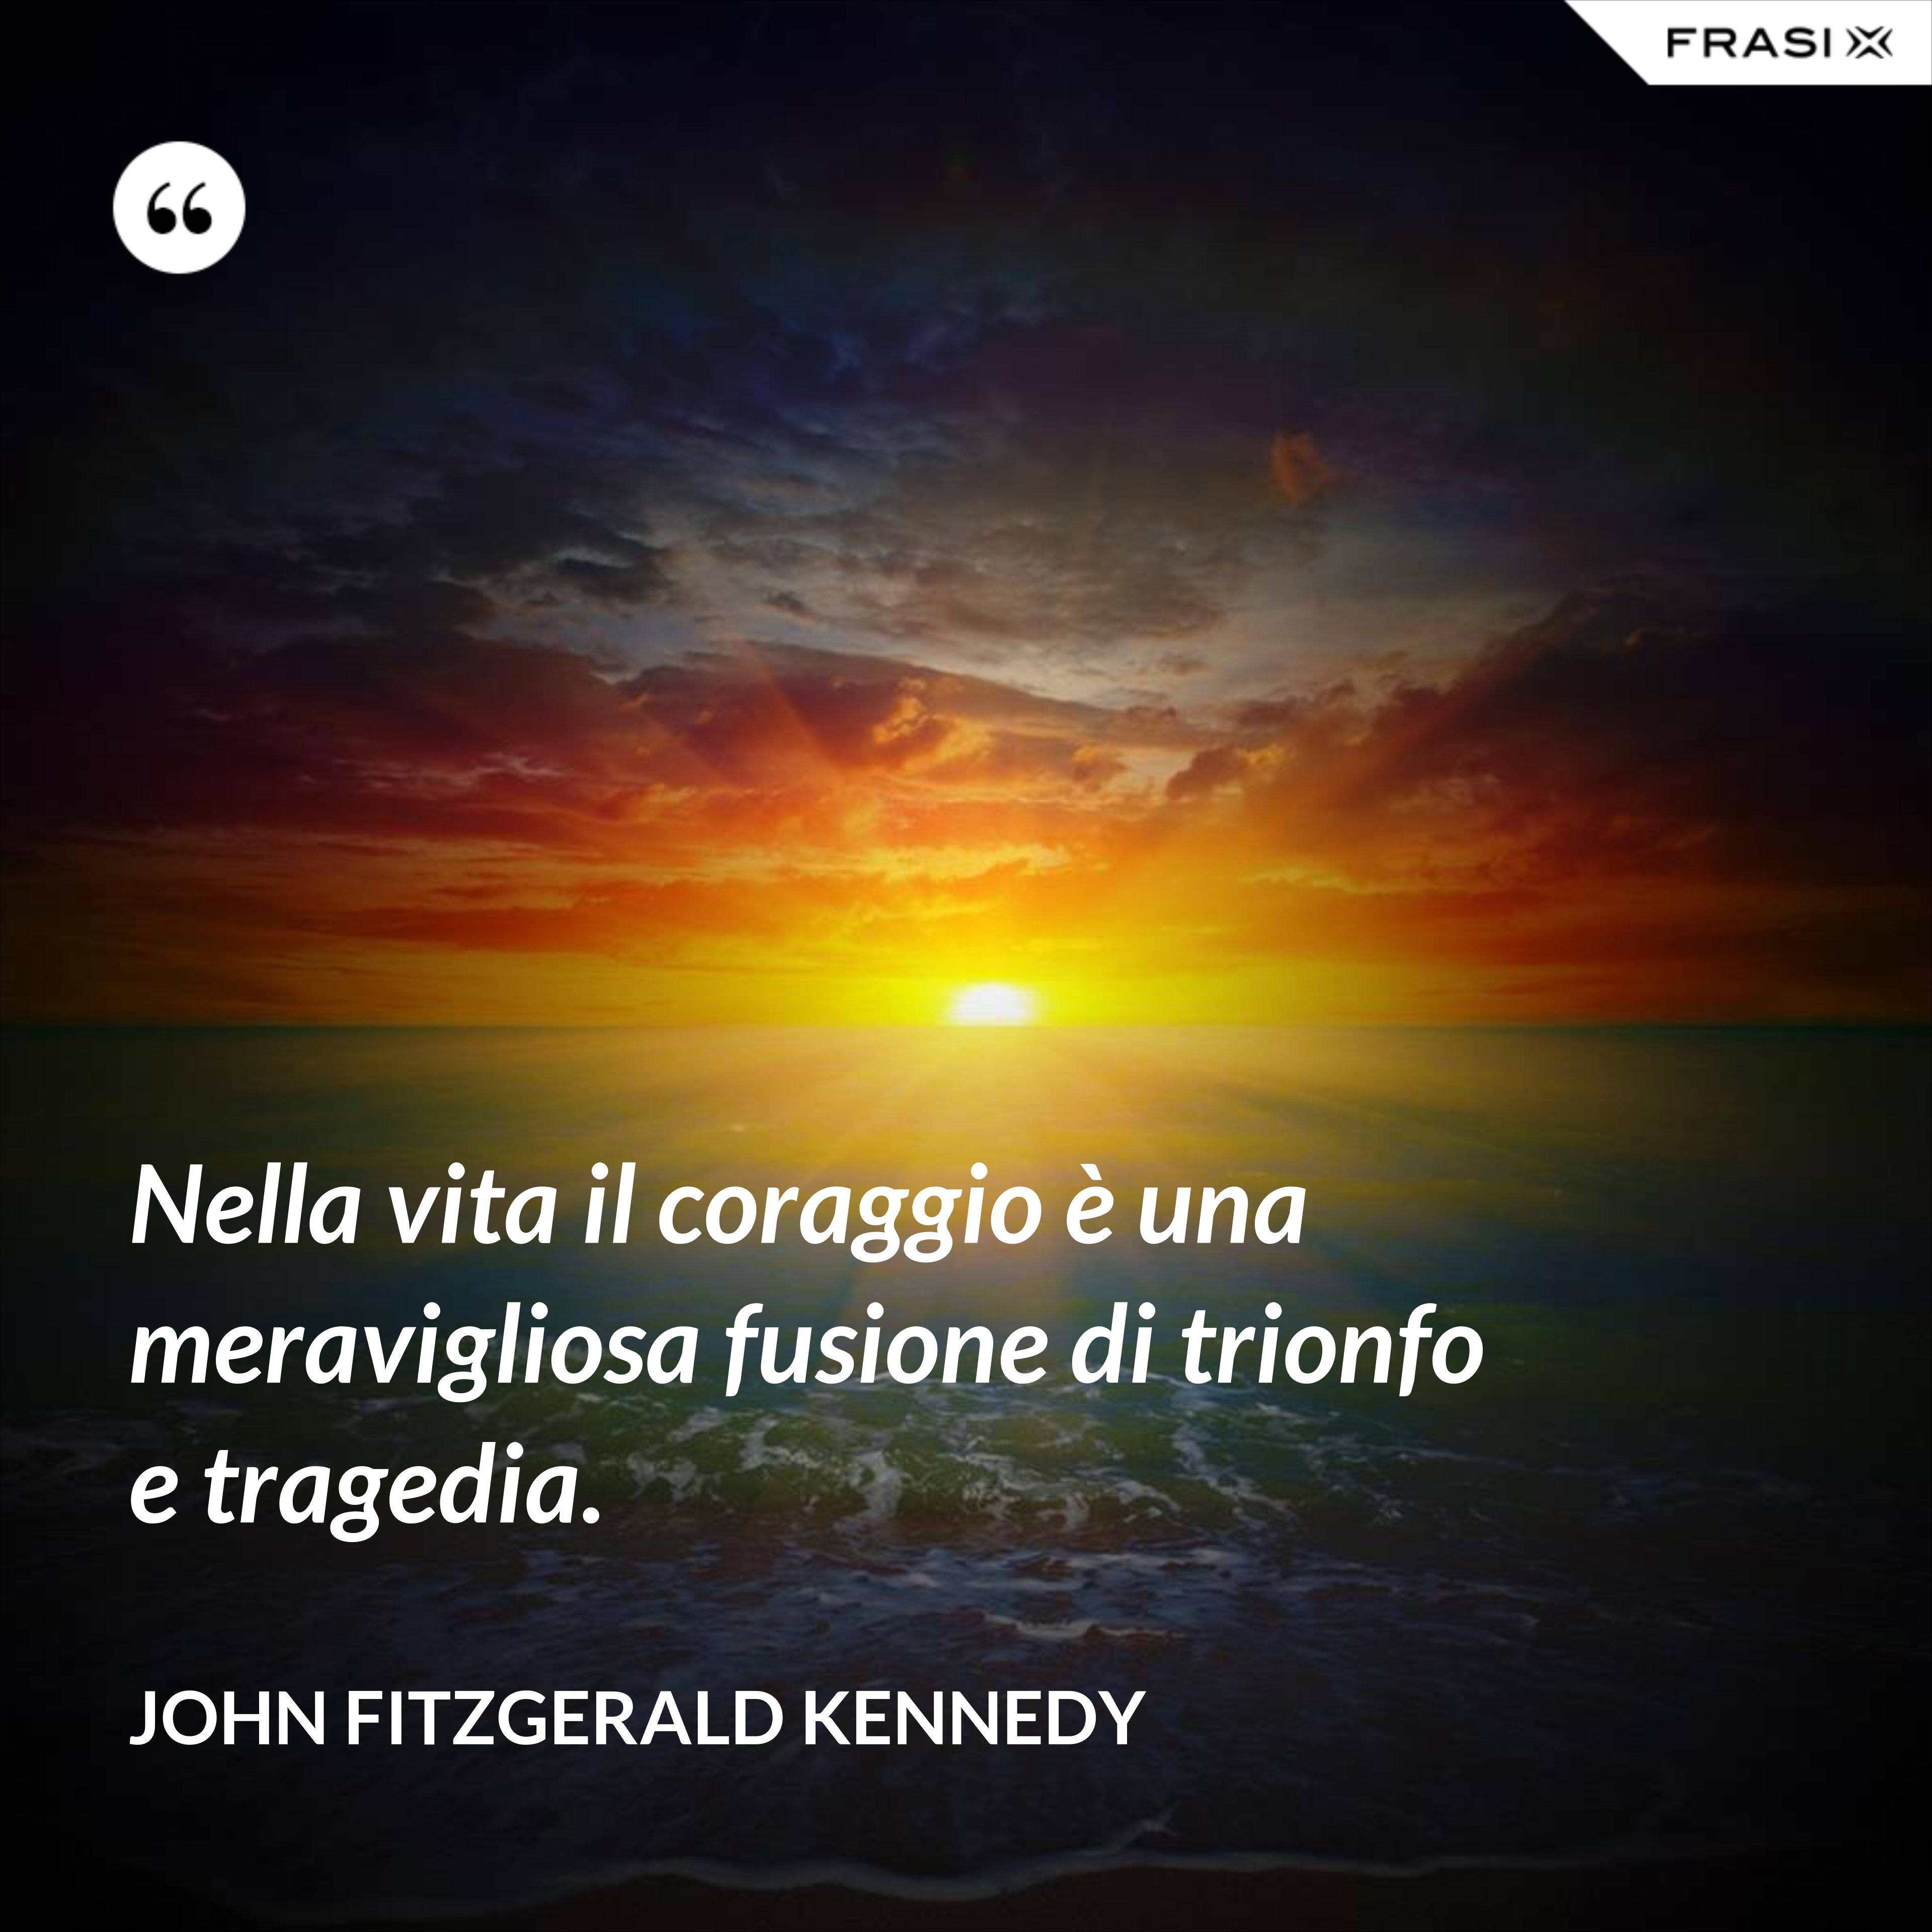 Nella vita il coraggio è una meravigliosa fusione di trionfo e tragedia. - John Fitzgerald Kennedy